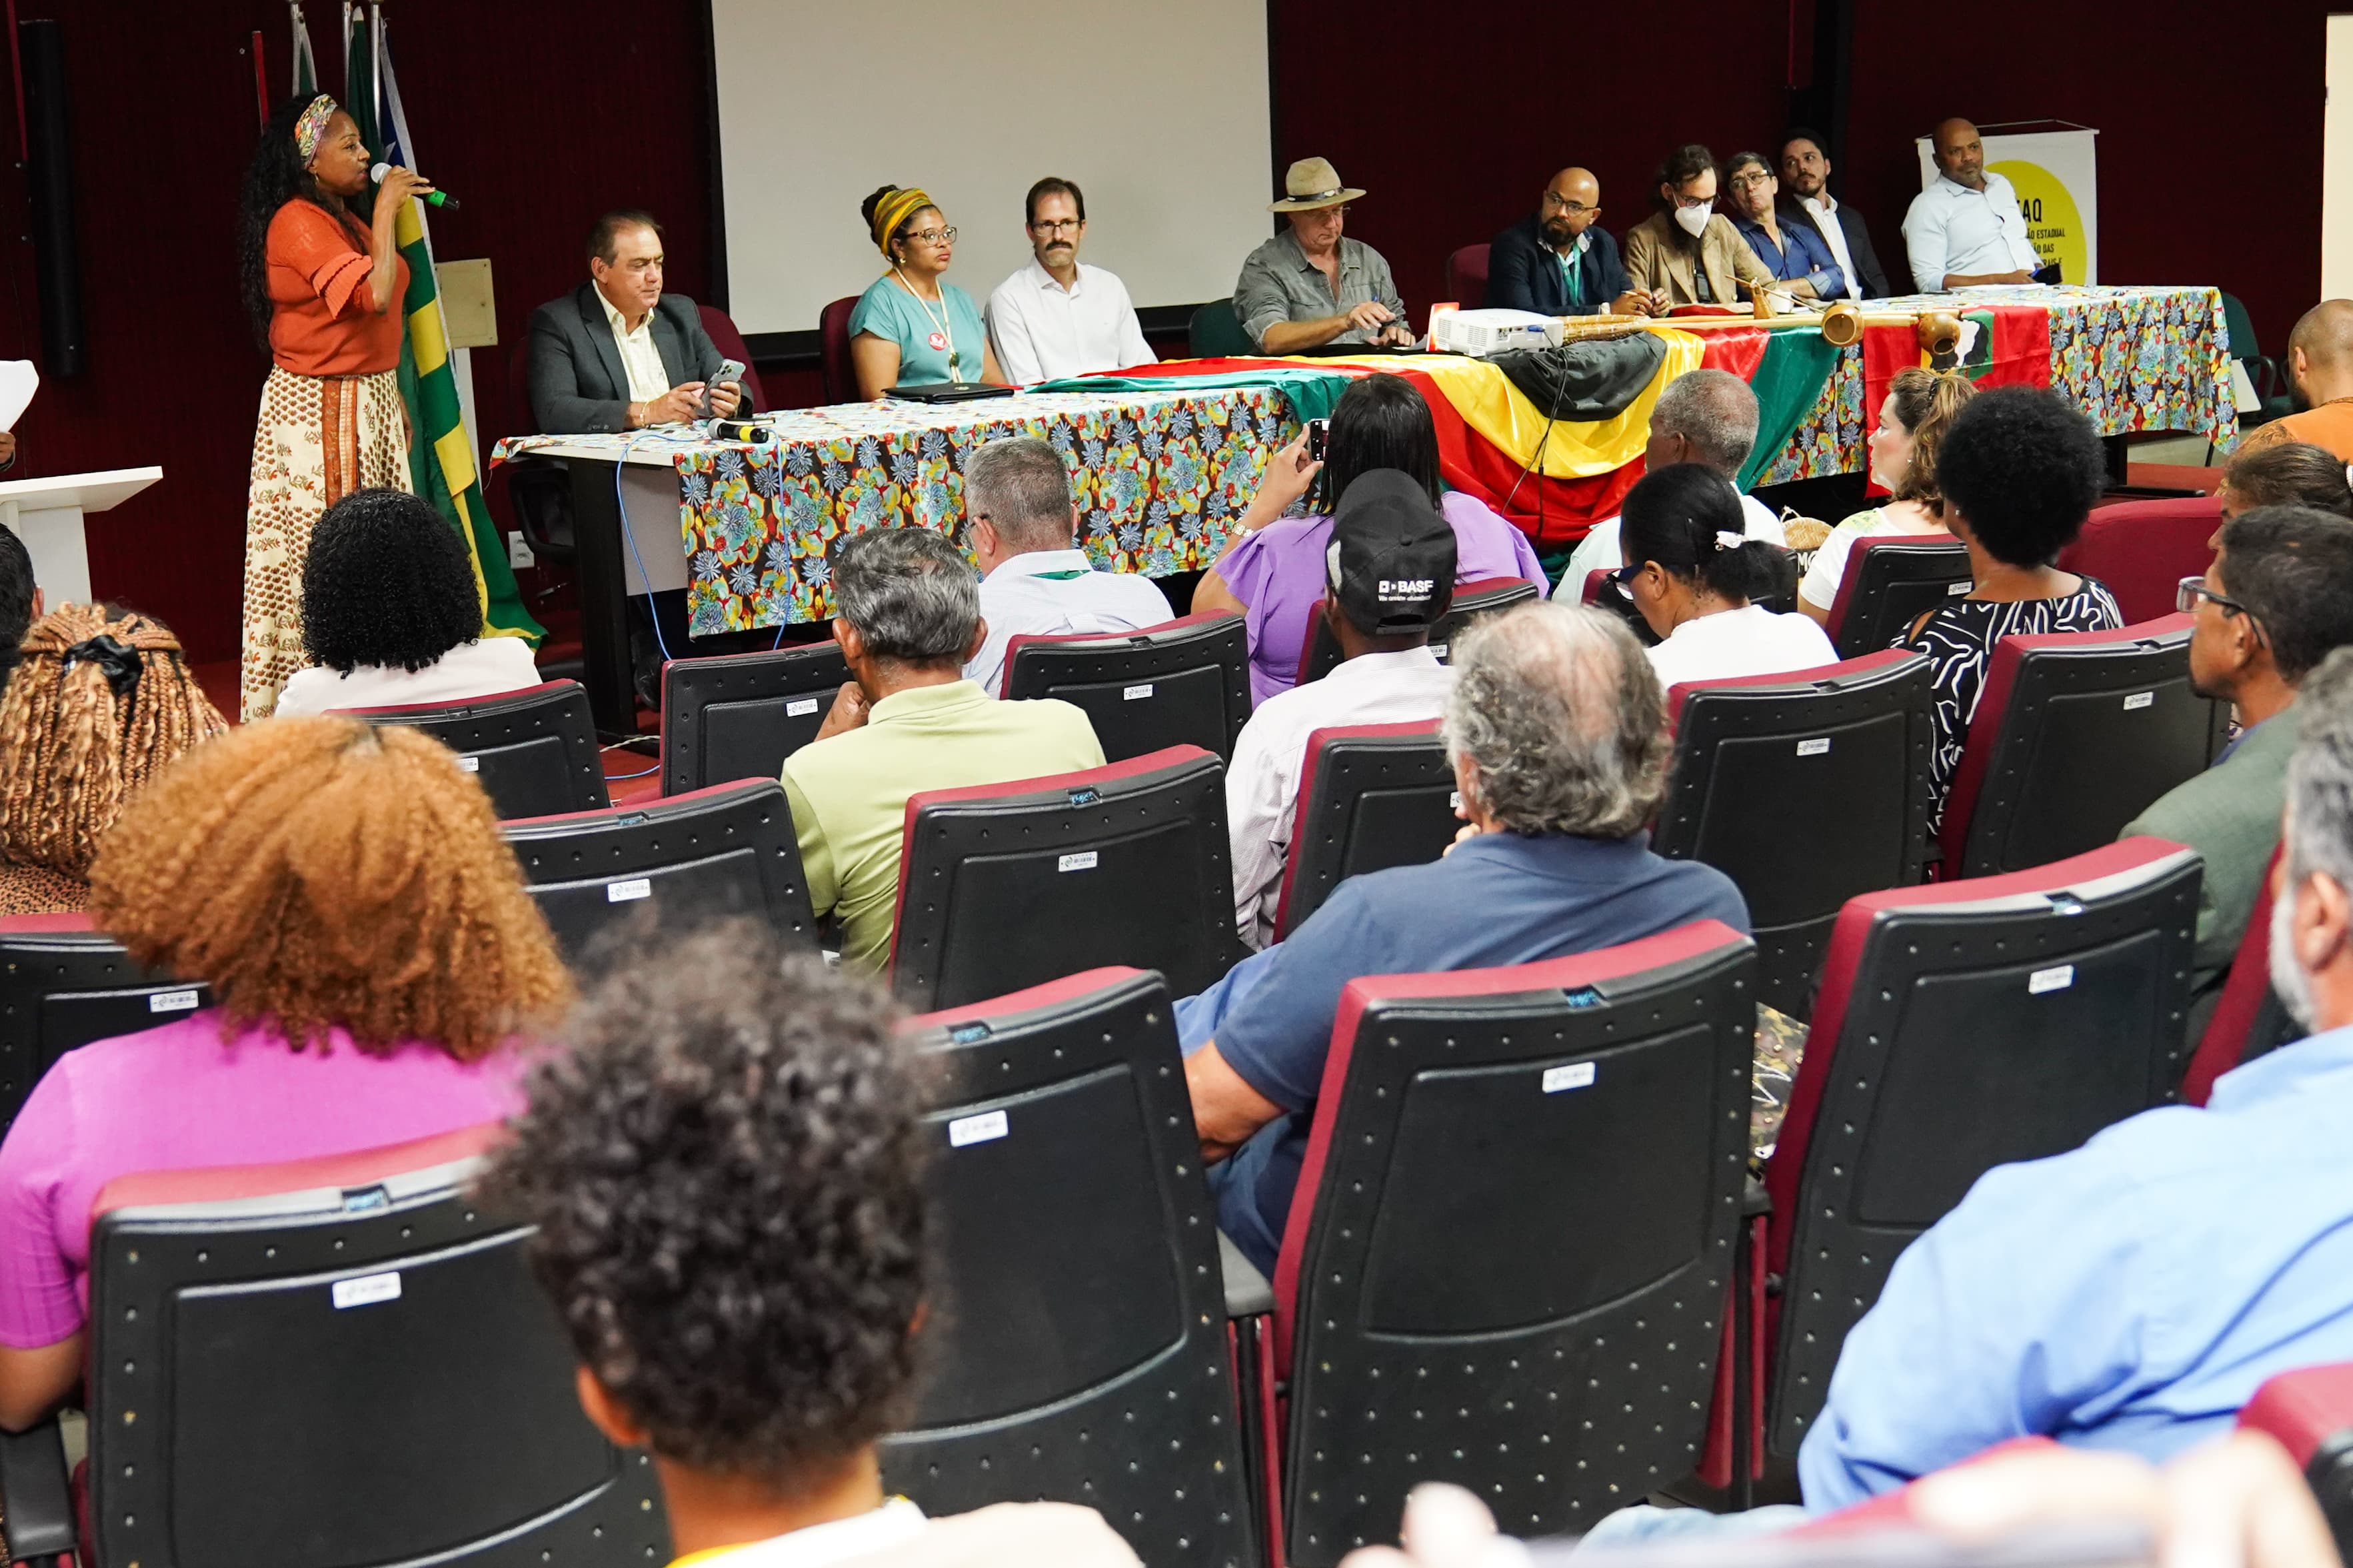 Agehab participa de encontro que debate soluções para habitação quilombola em Goiás